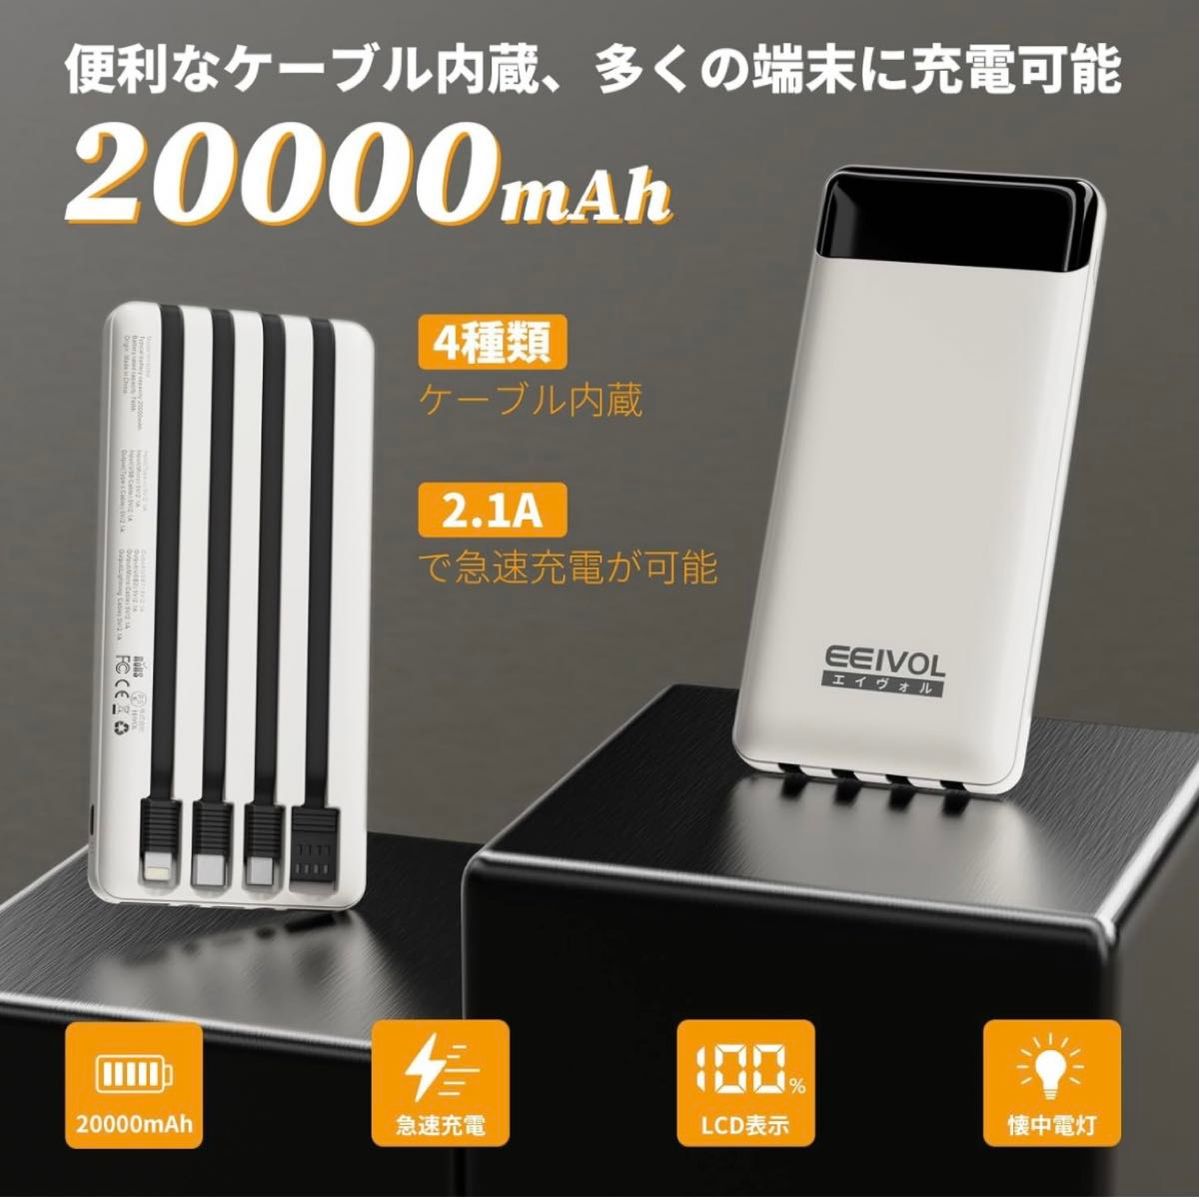 【モバイルバッテリー】20000mAh 充電器 5台同時充電 大容量 軽量 小型 防災用品 アウトドア 急速充電 LEDライト搭載